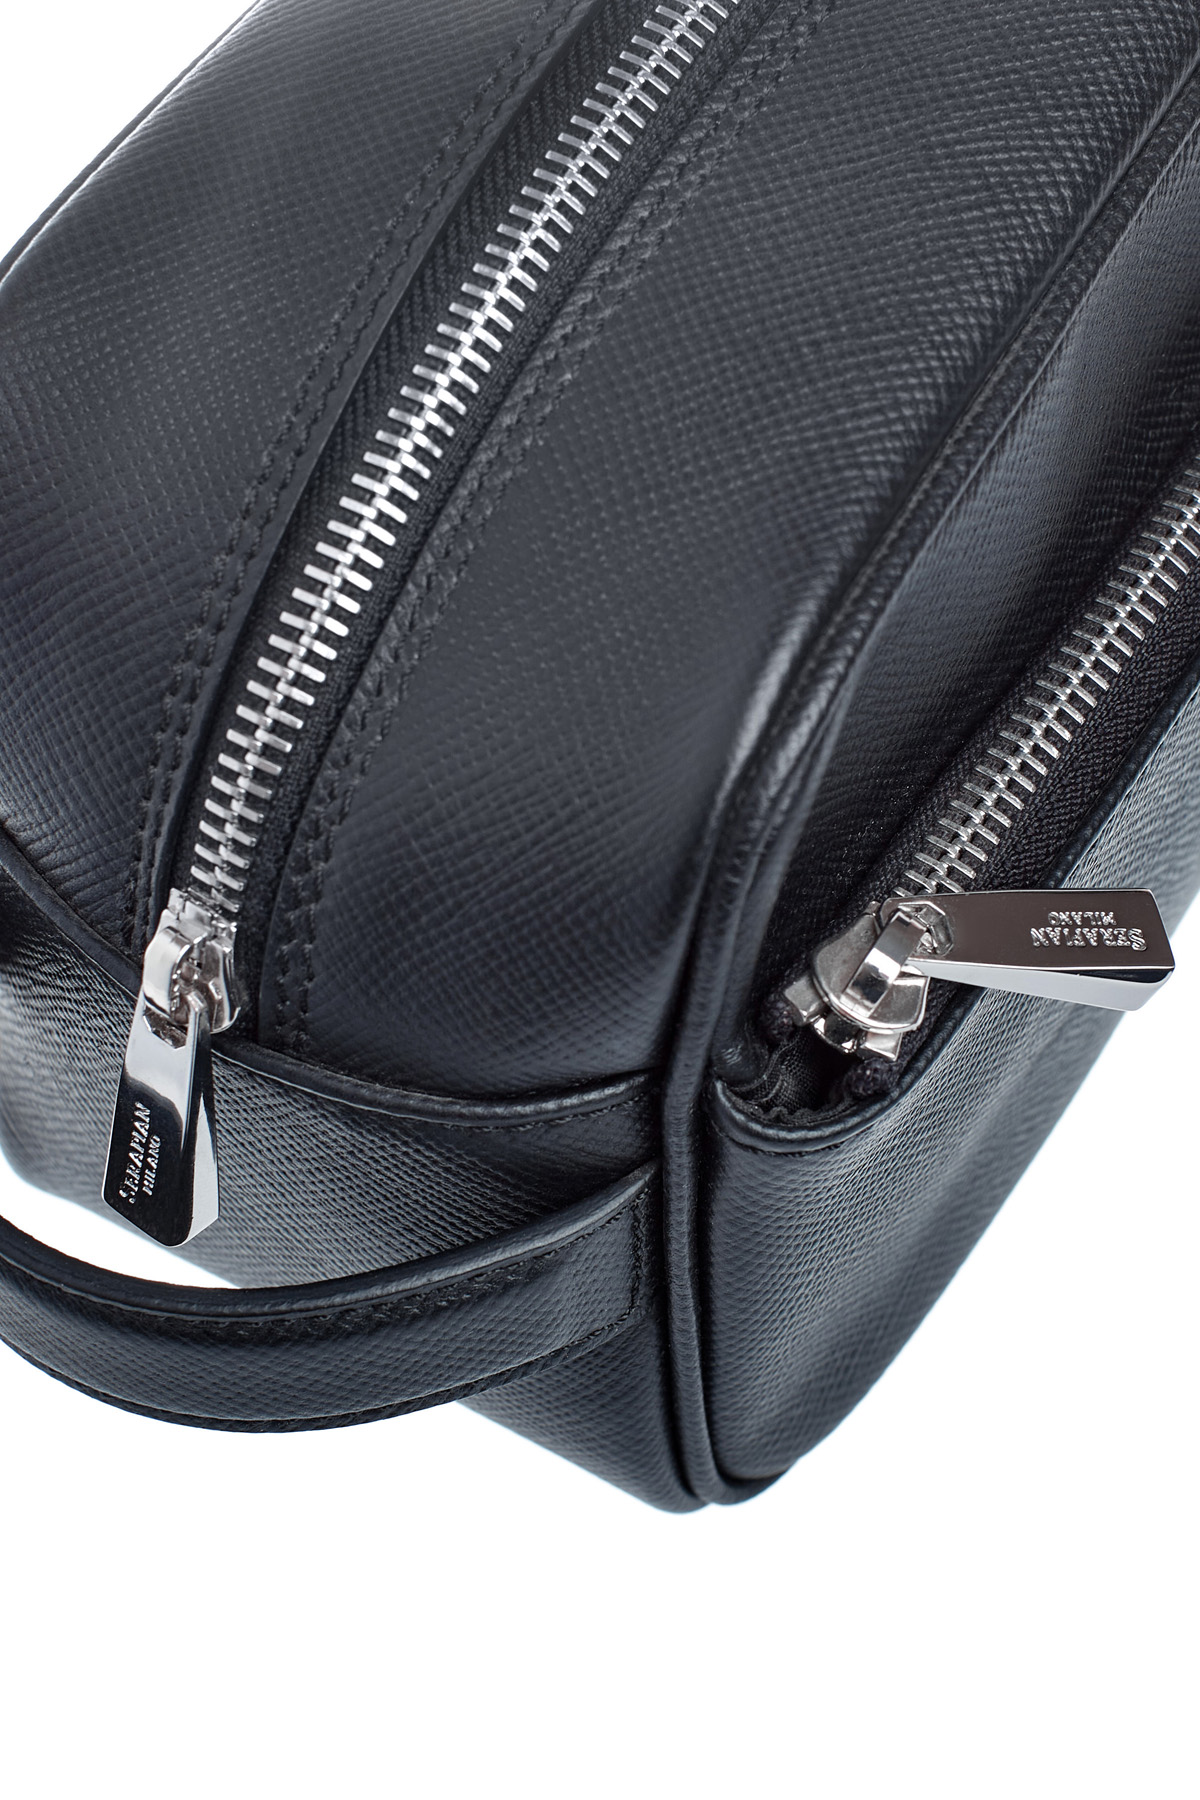 Кожаный несессер в классическом стиле с фирменным сафьяновым тиснением SERAPIAN, цвет черный, размер XS;S;M - фото 7